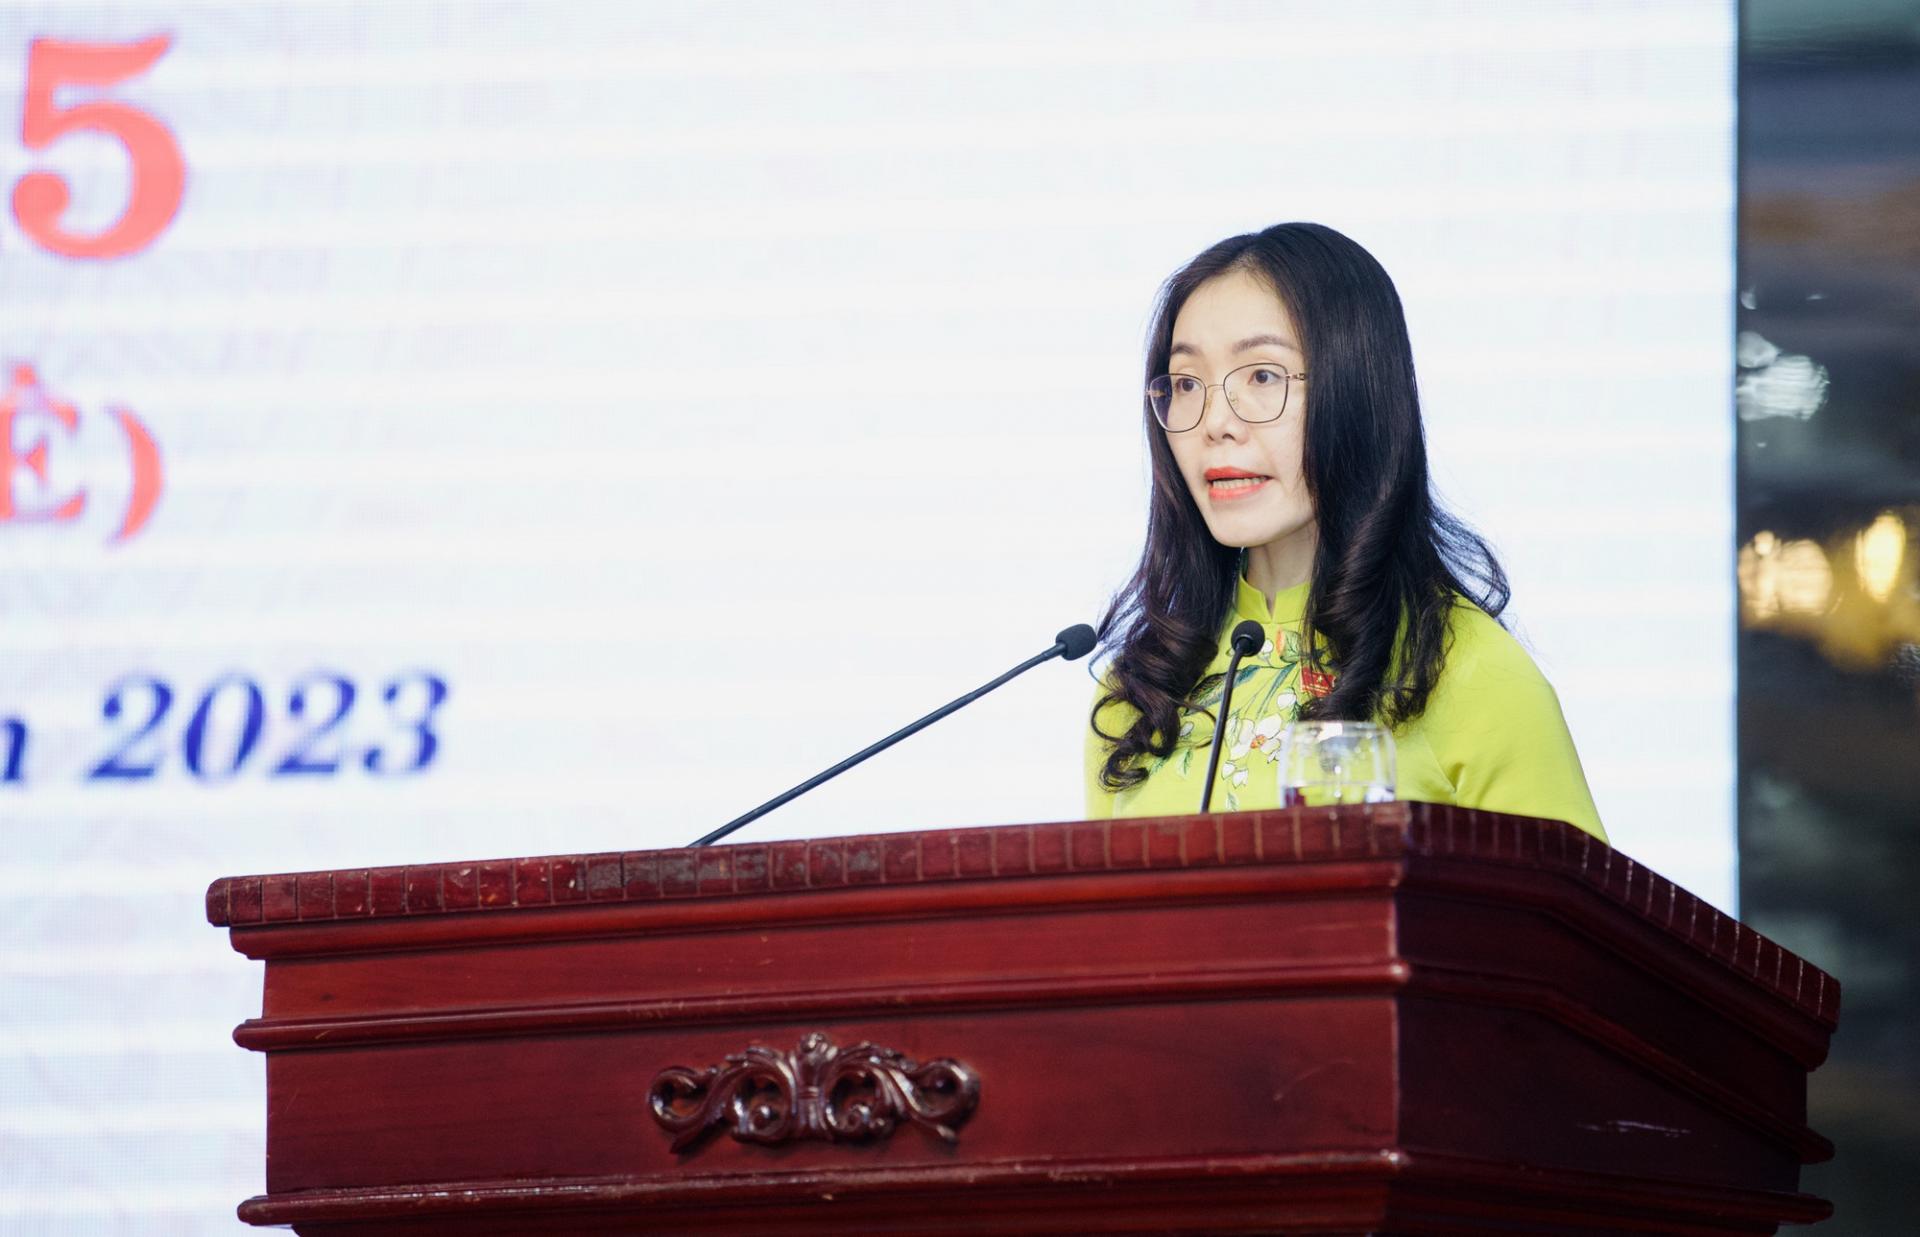 Đồng chí Nguyễn Thị Anh Hoa, Thư ký kỳ họp trình bày dự thảo Nghị quyết.